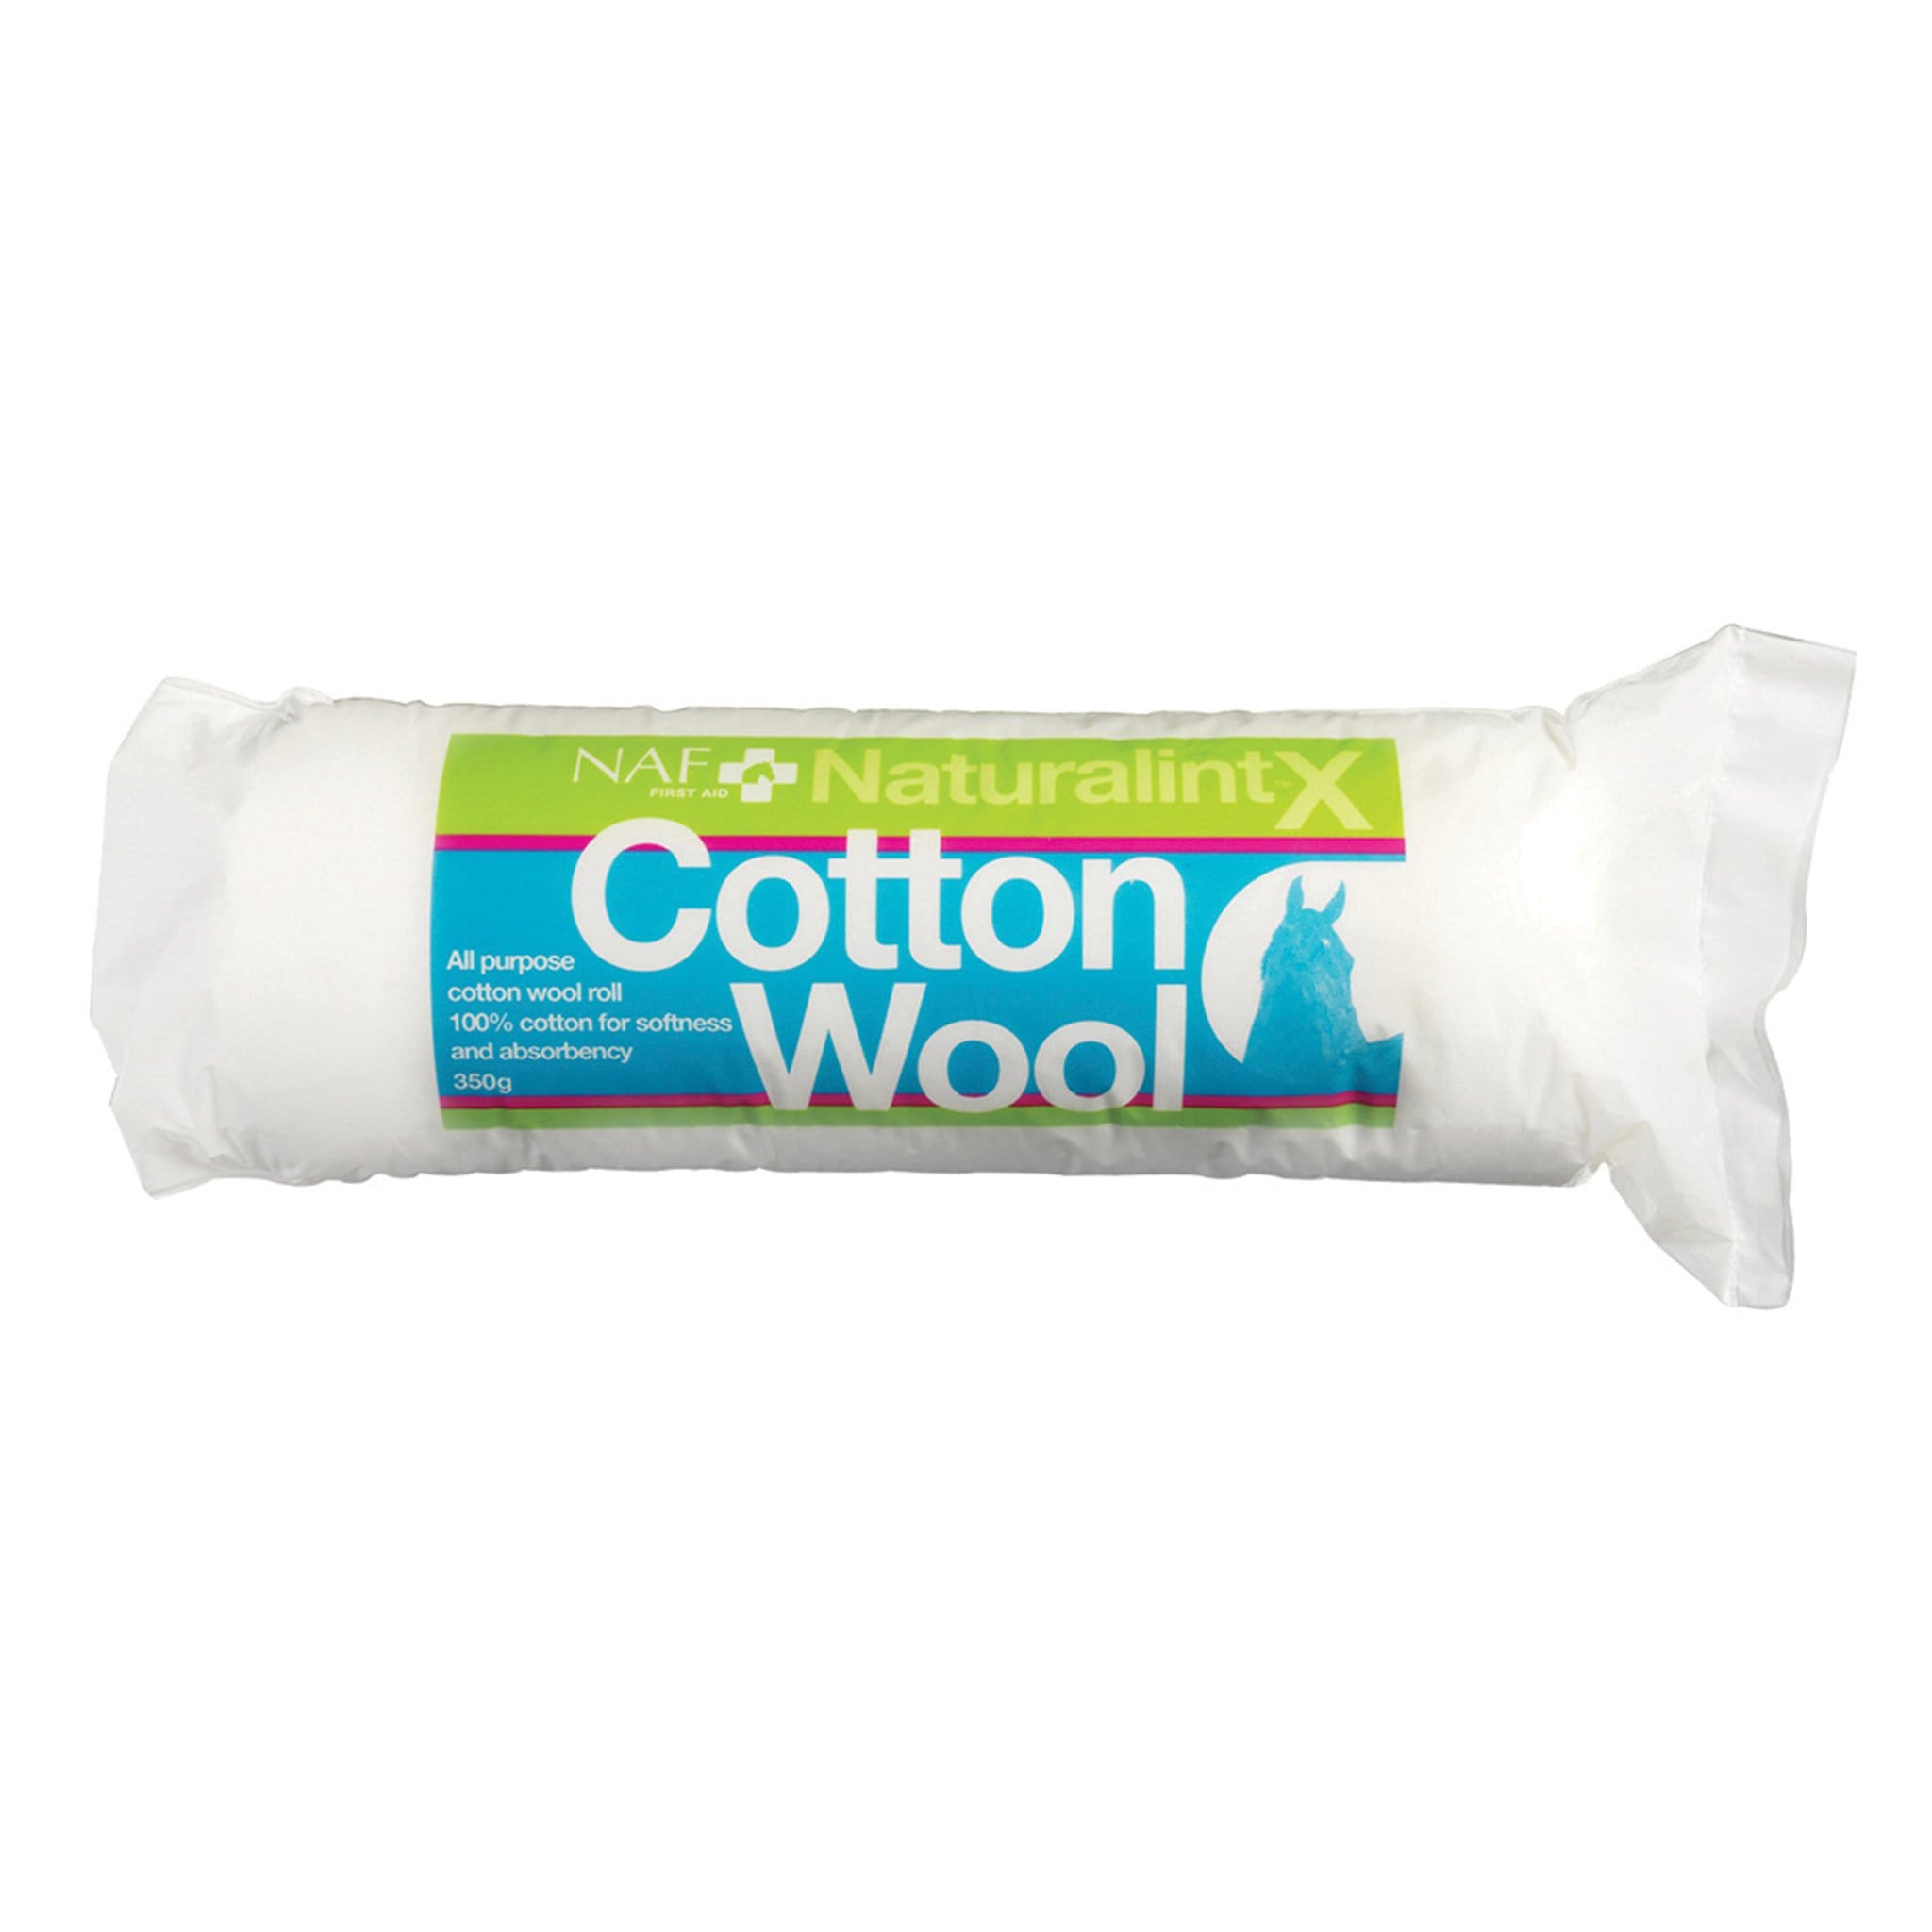 NAF NaturalintX Cotton Wool 8154